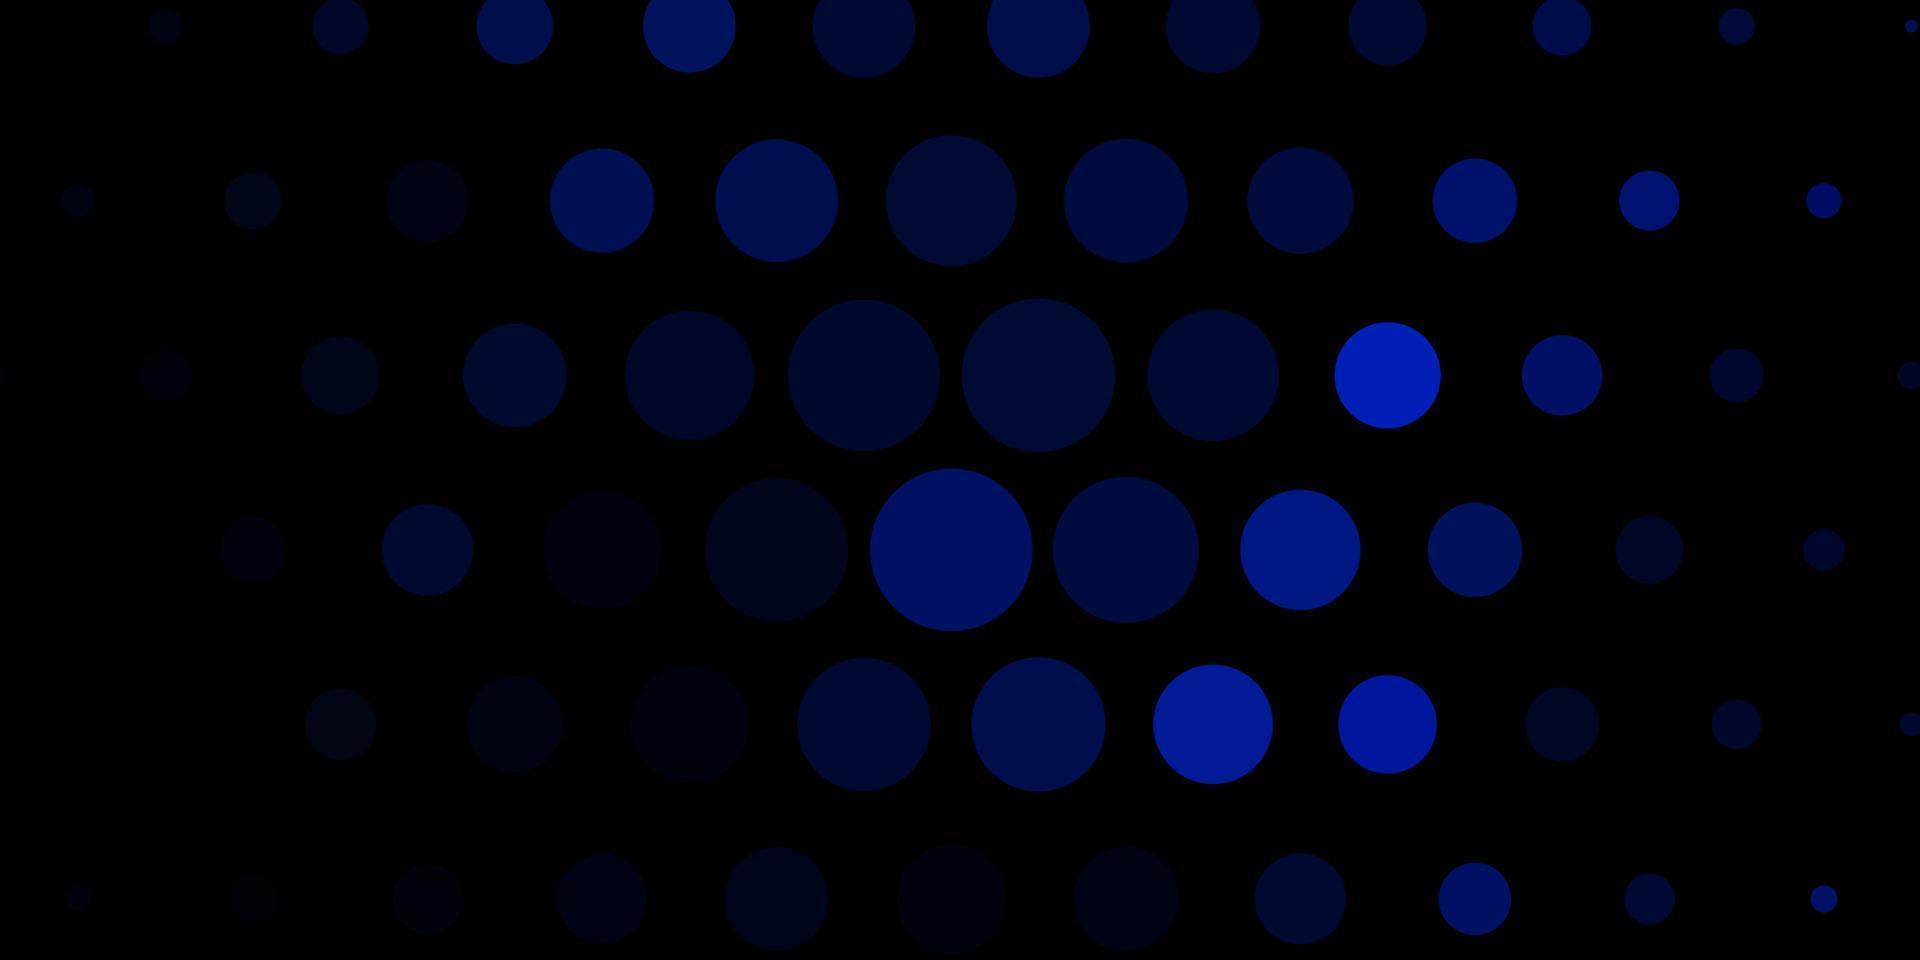 sfondo vettoriale blu scuro con macchie.